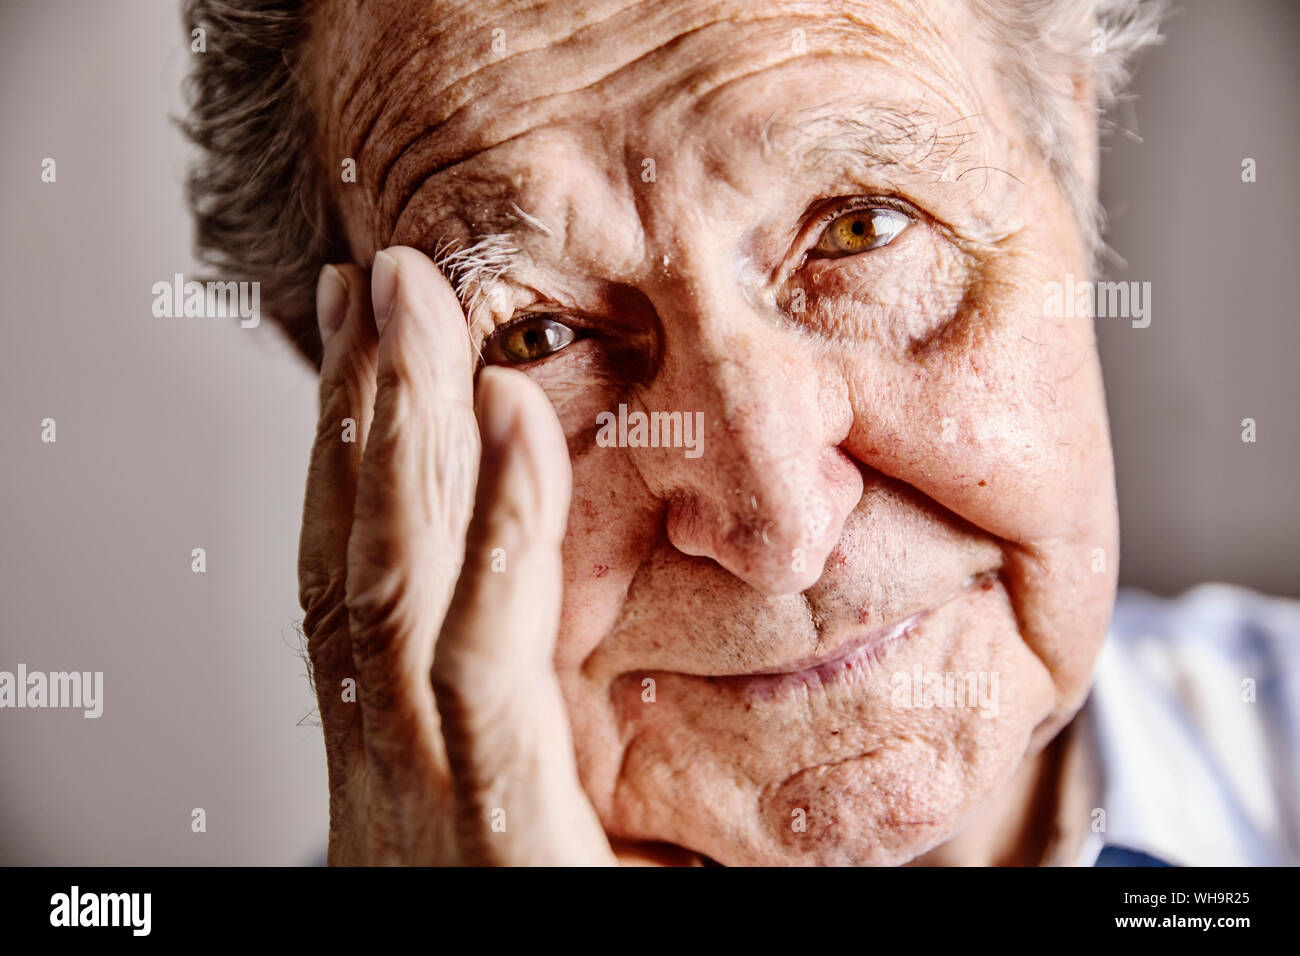 Ritratto di uomo anziano con la mano sulla faccia, close-up Foto Stock